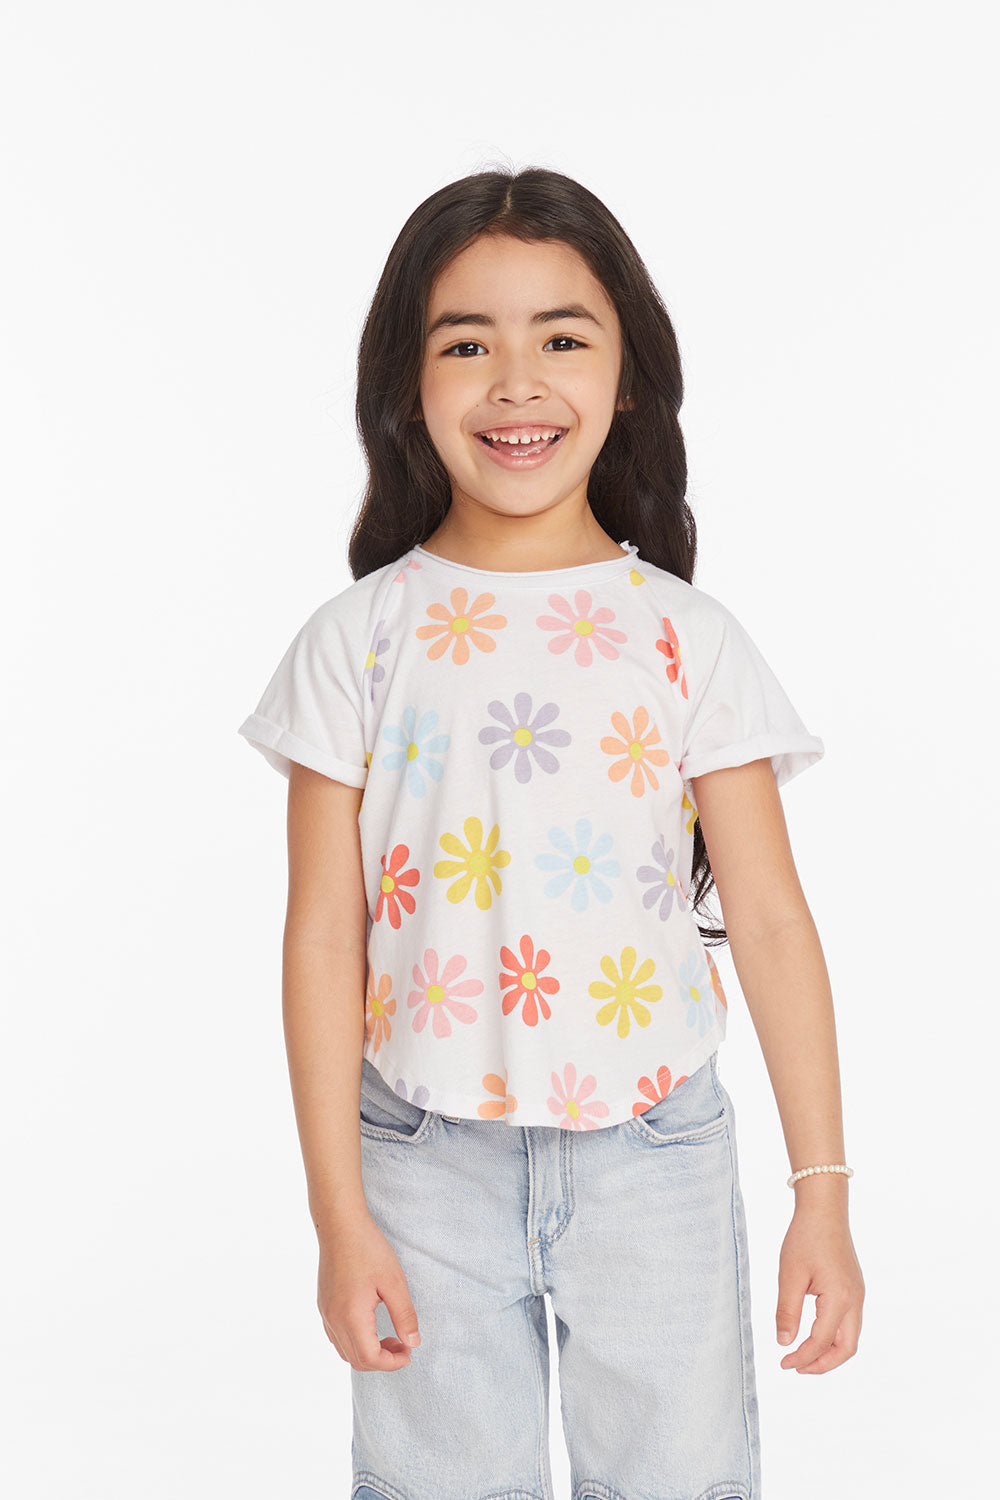 Allover Flower Girls Shirt Girls chaserbrand